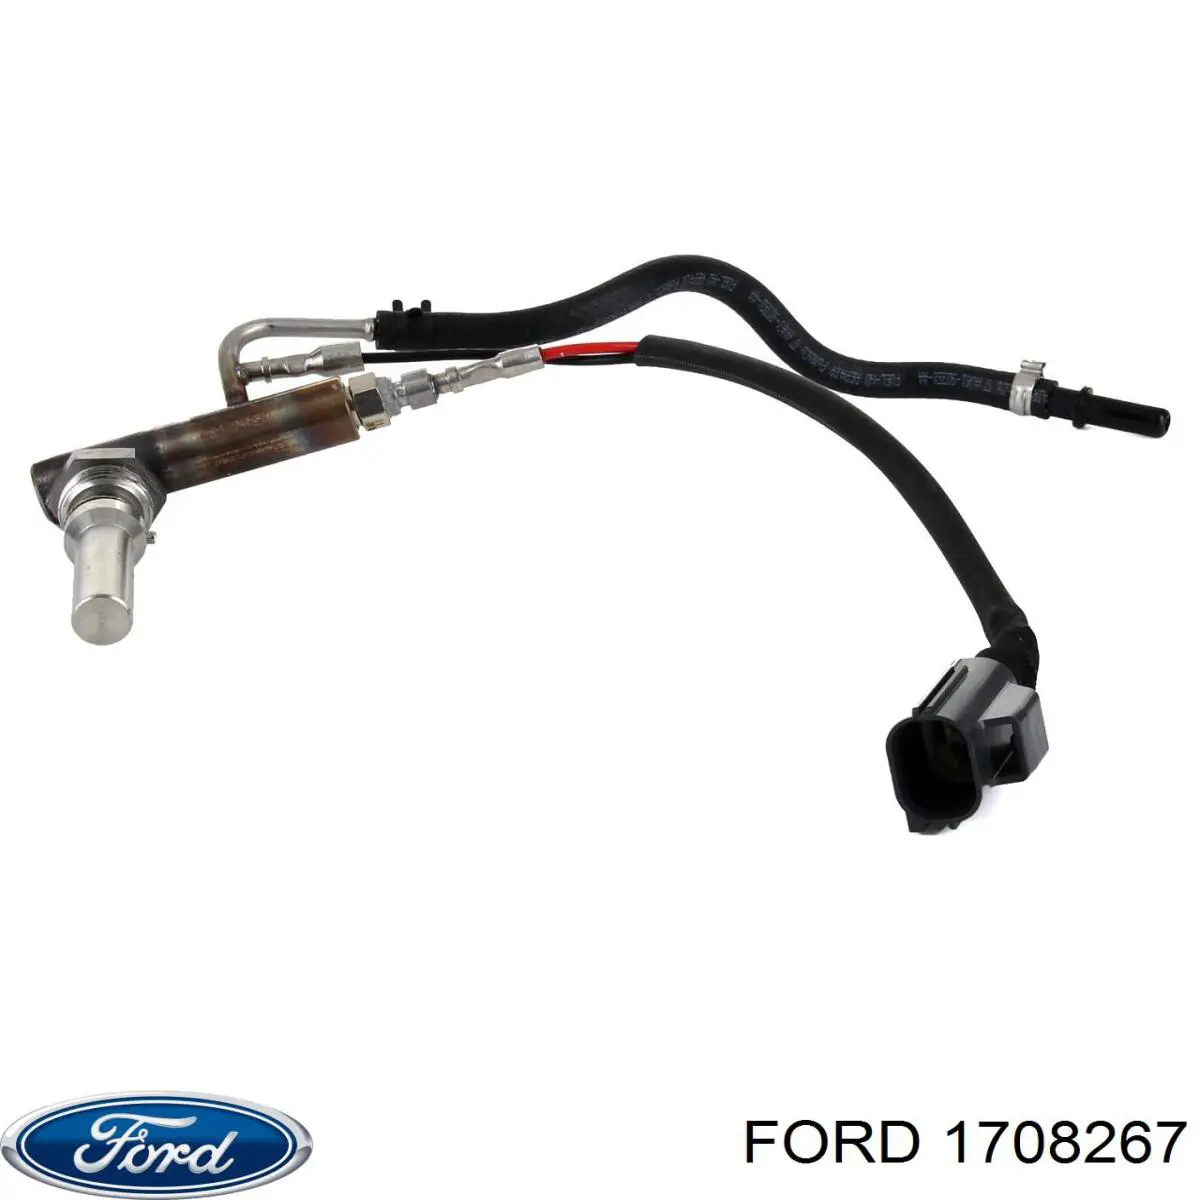 Injetor de injeção AD BLUE para Ford Focus (CB8)